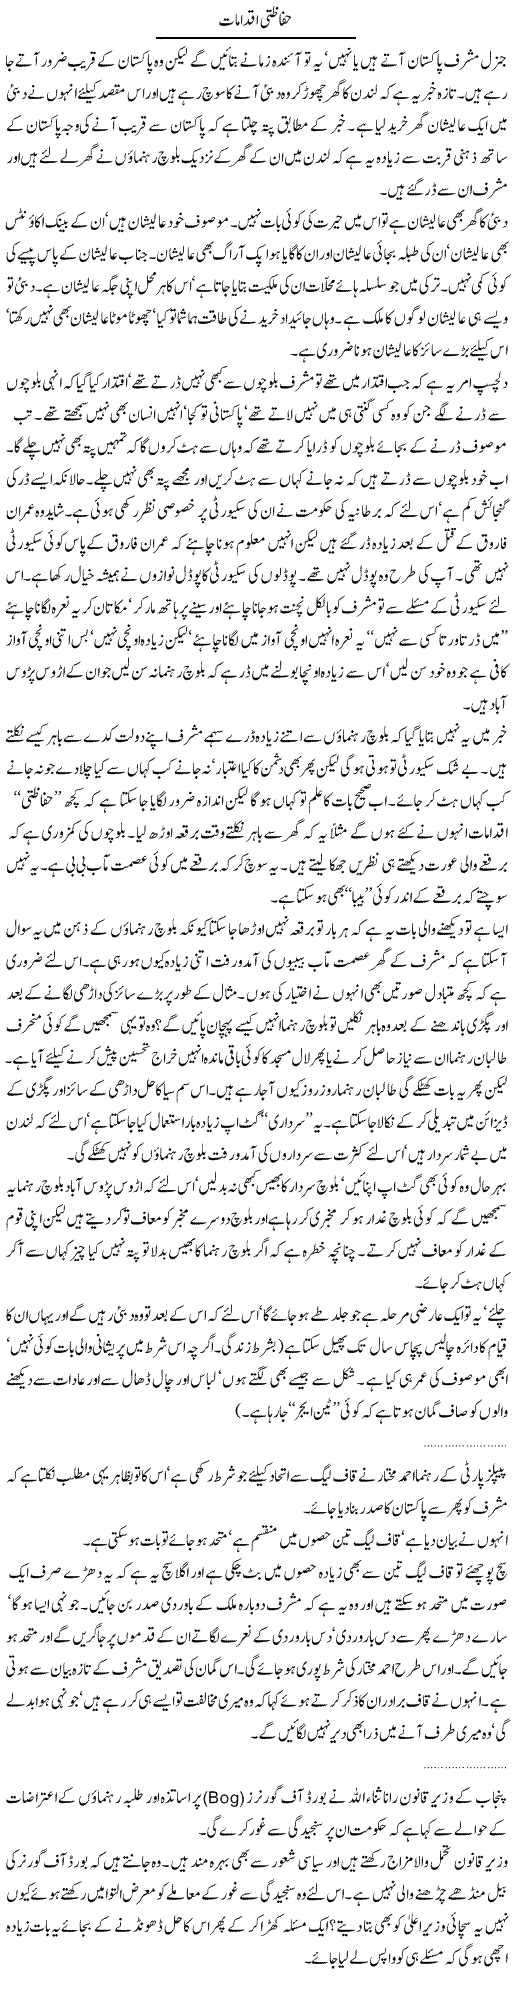 Security Measures Express Column Abdullah Tariq 23 December 2010